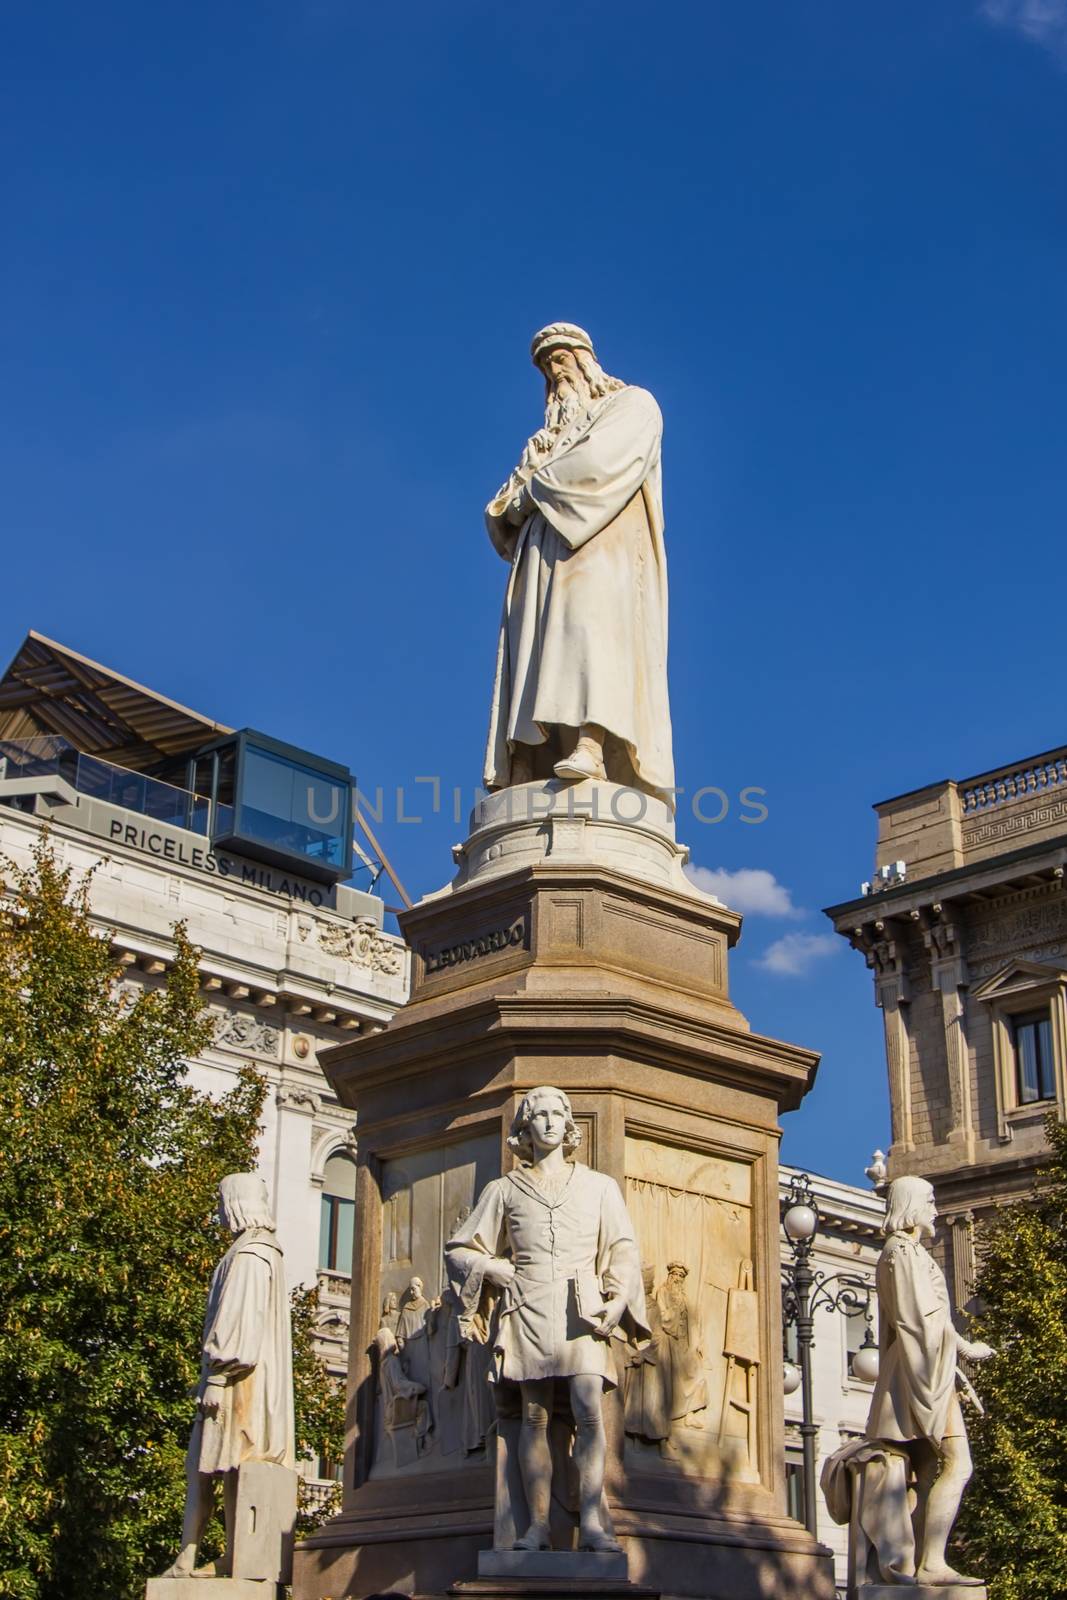 The centre of the square "Piazza della Scala" is marked by the monument of Leonardo da Vinci